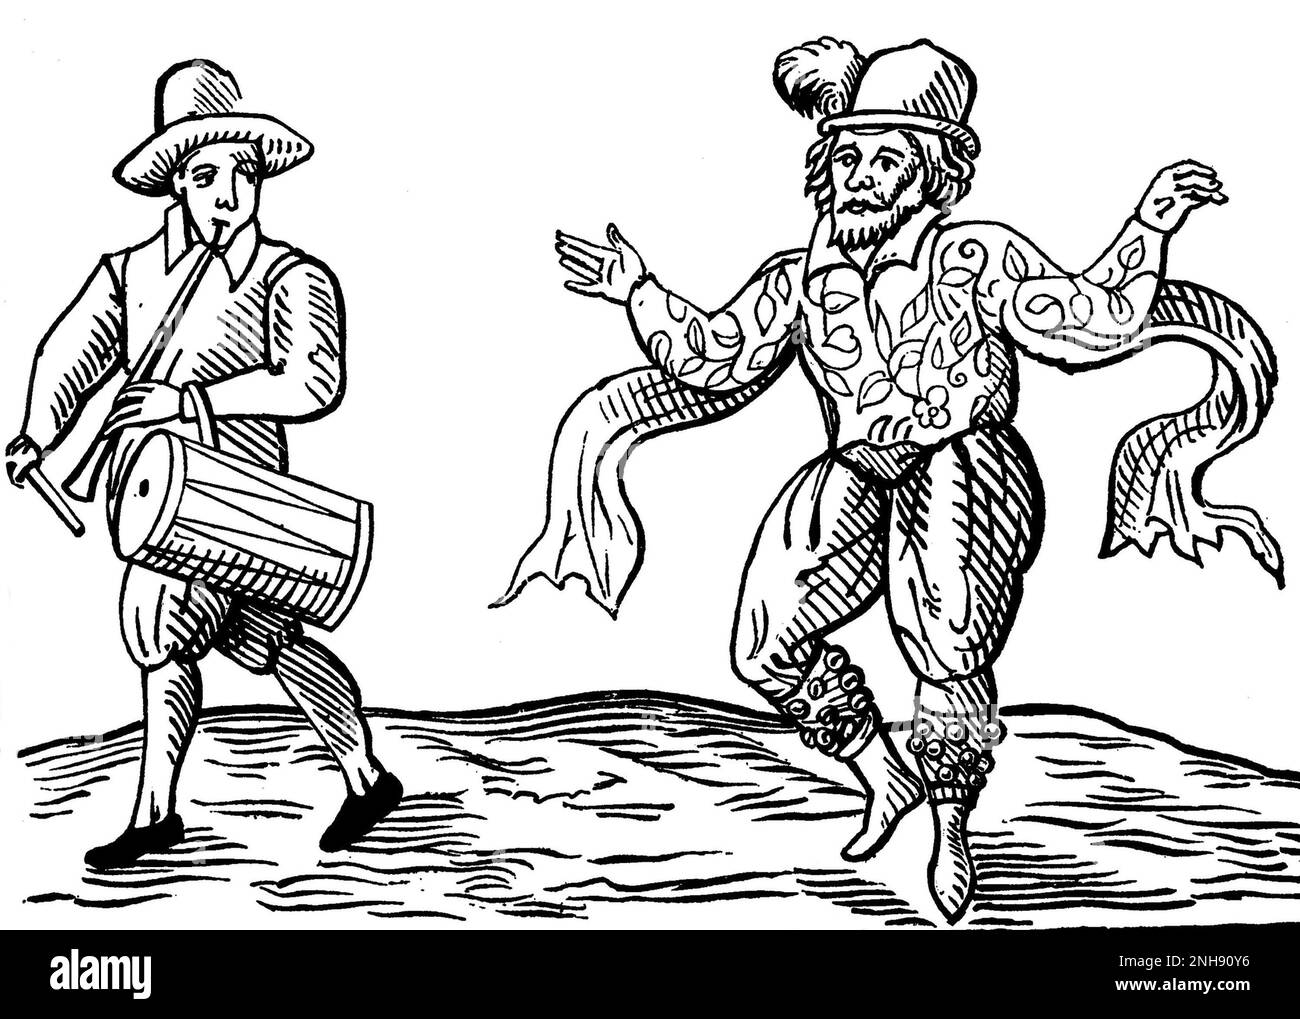 William Kempe (1560-1603), communément appelé Wwill Kemp, était un acteur et danseur anglais spécialisé dans les rôles comiques et mieux connu pour avoir été l'un des premiers joueurs dans les drames de William Shakespeare. Après son départ des hommes de Chamberlain, Kemp a continué à poursuivre sa carrière comme interprète. En février et mars 1600, il entreprit ce qu'il appellerait plus tard sa « merveille de neuf jours », dans laquelle il morris dansait de Londres à Norwich et publia par la suite une description de l'événement, dans lequel apparaît cette gravure (1600). Banque D'Images